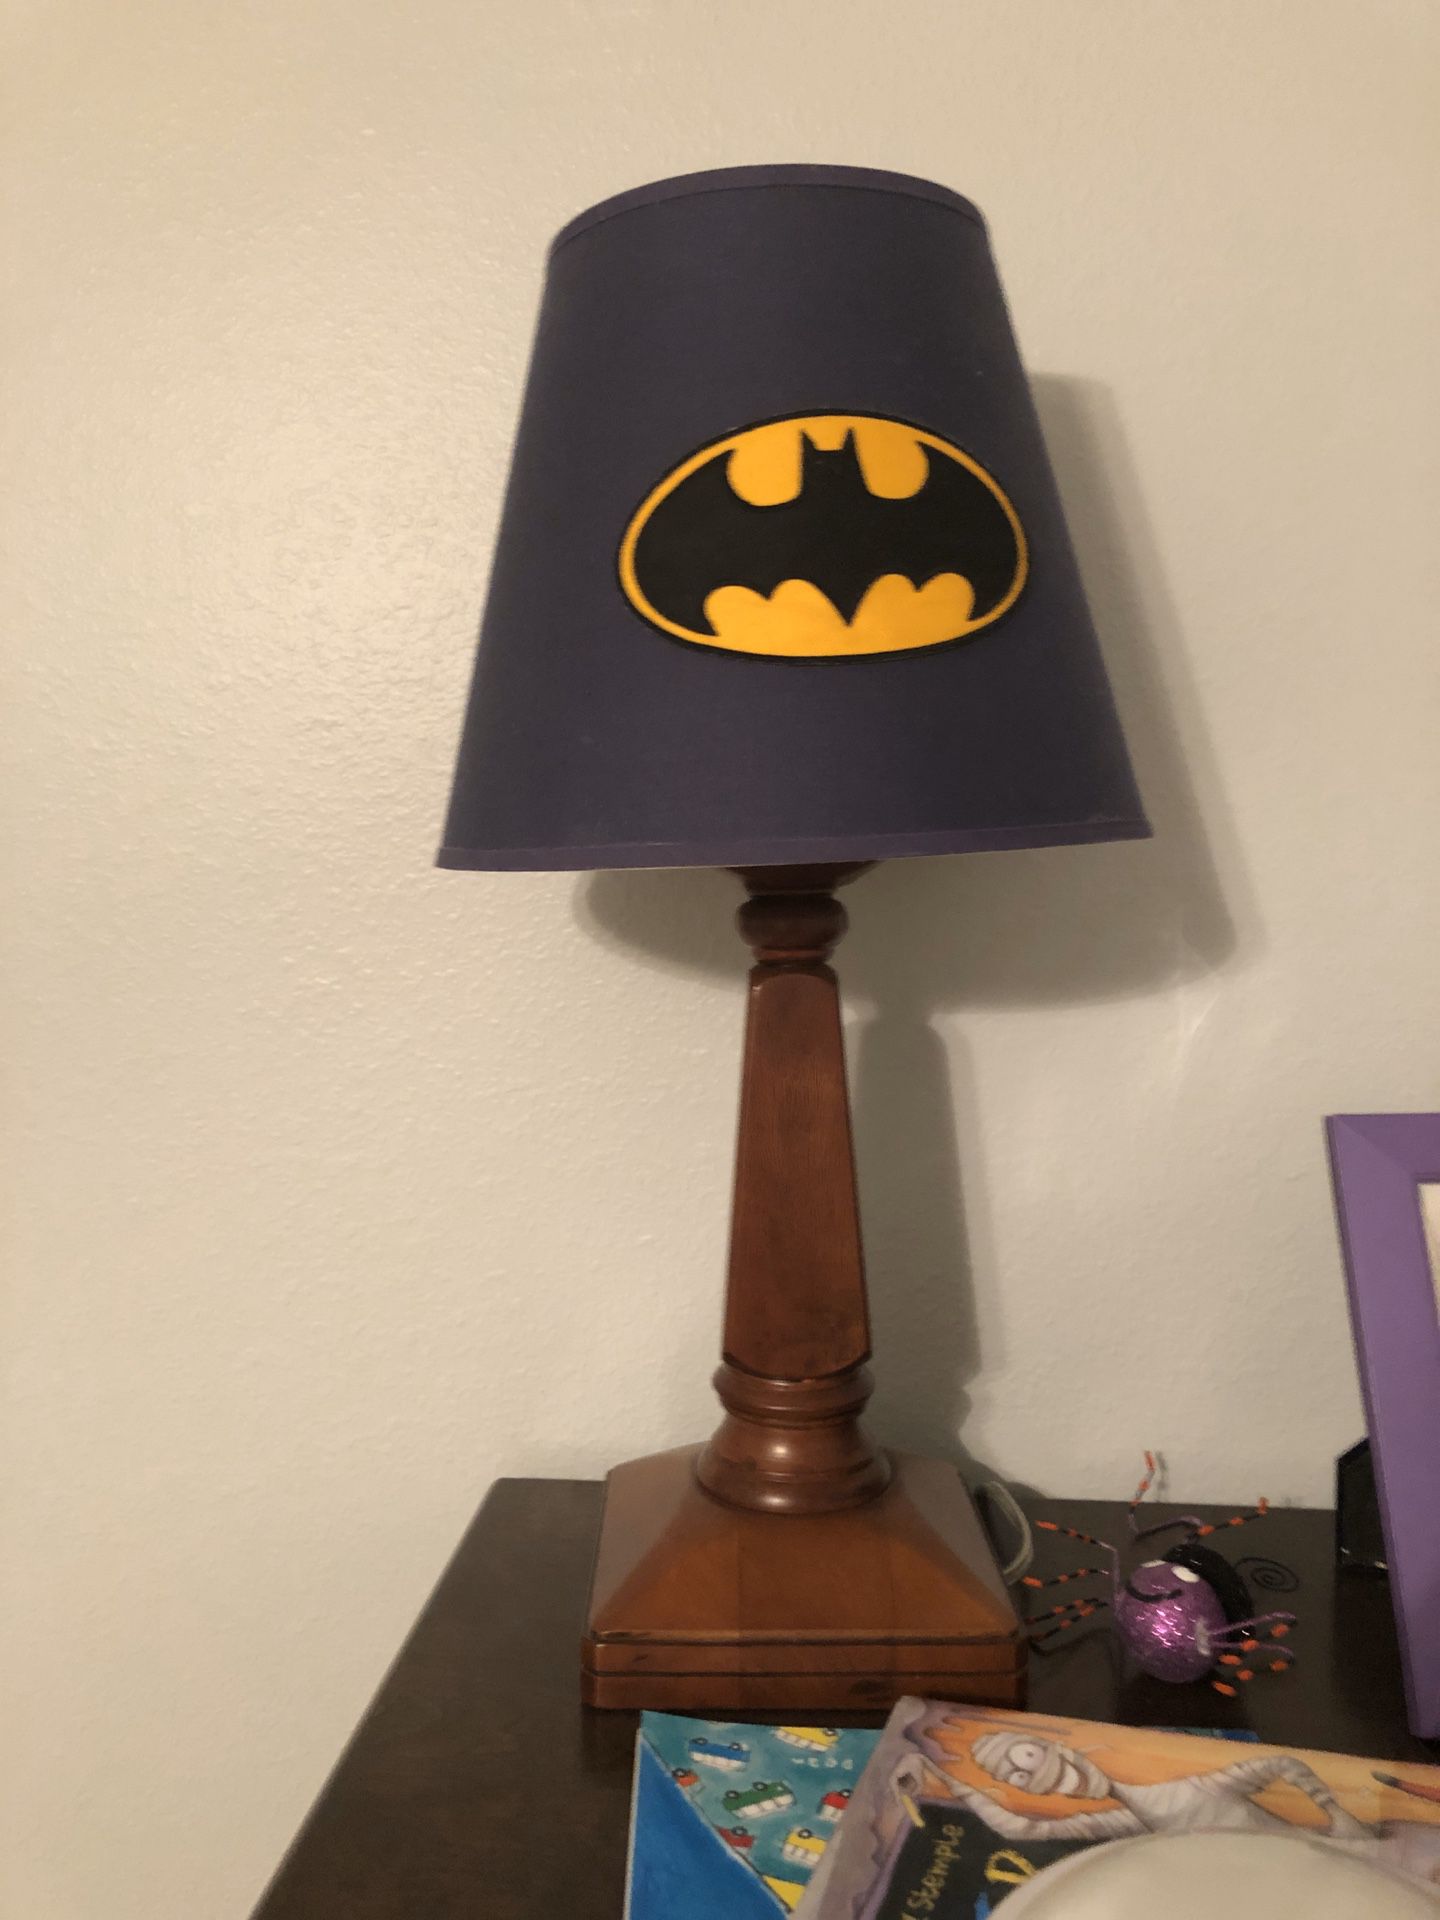 Pottery barn Batman lamp